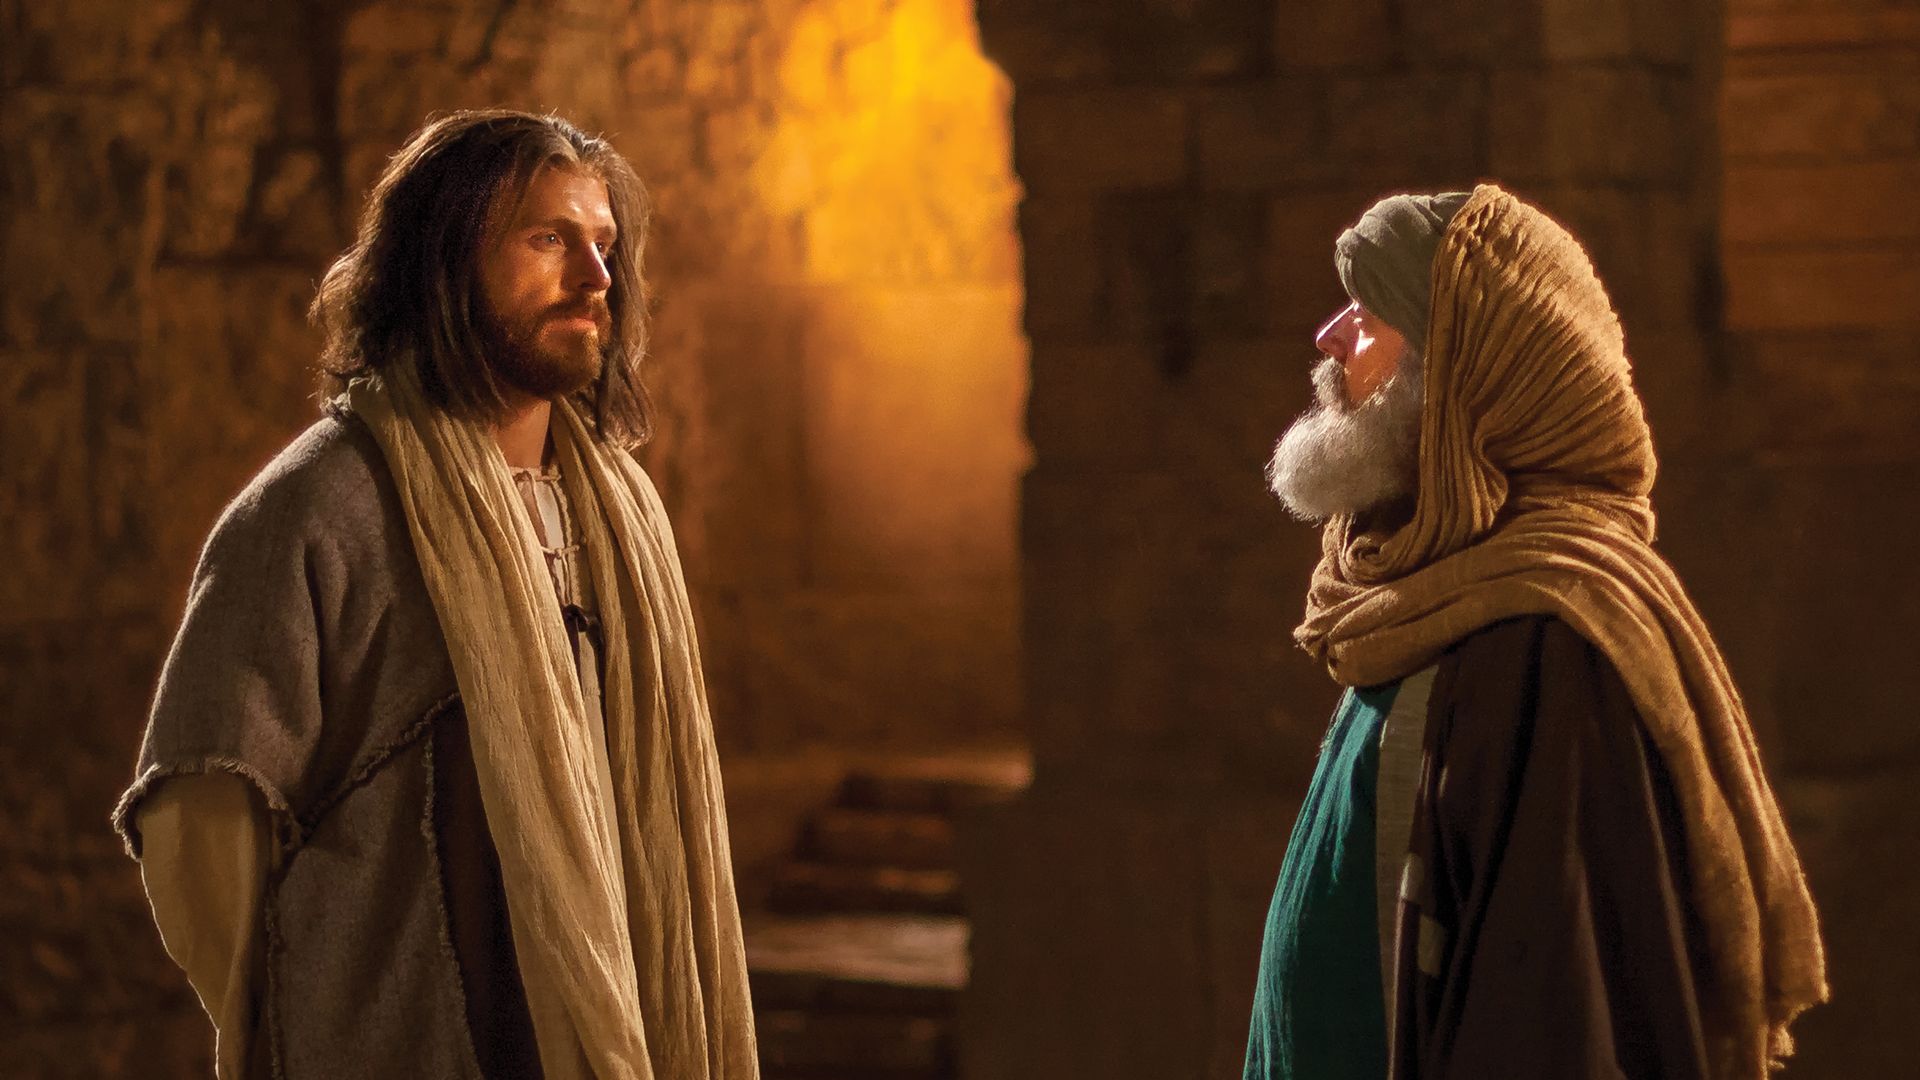 Jesus speaking with Nicodemus.